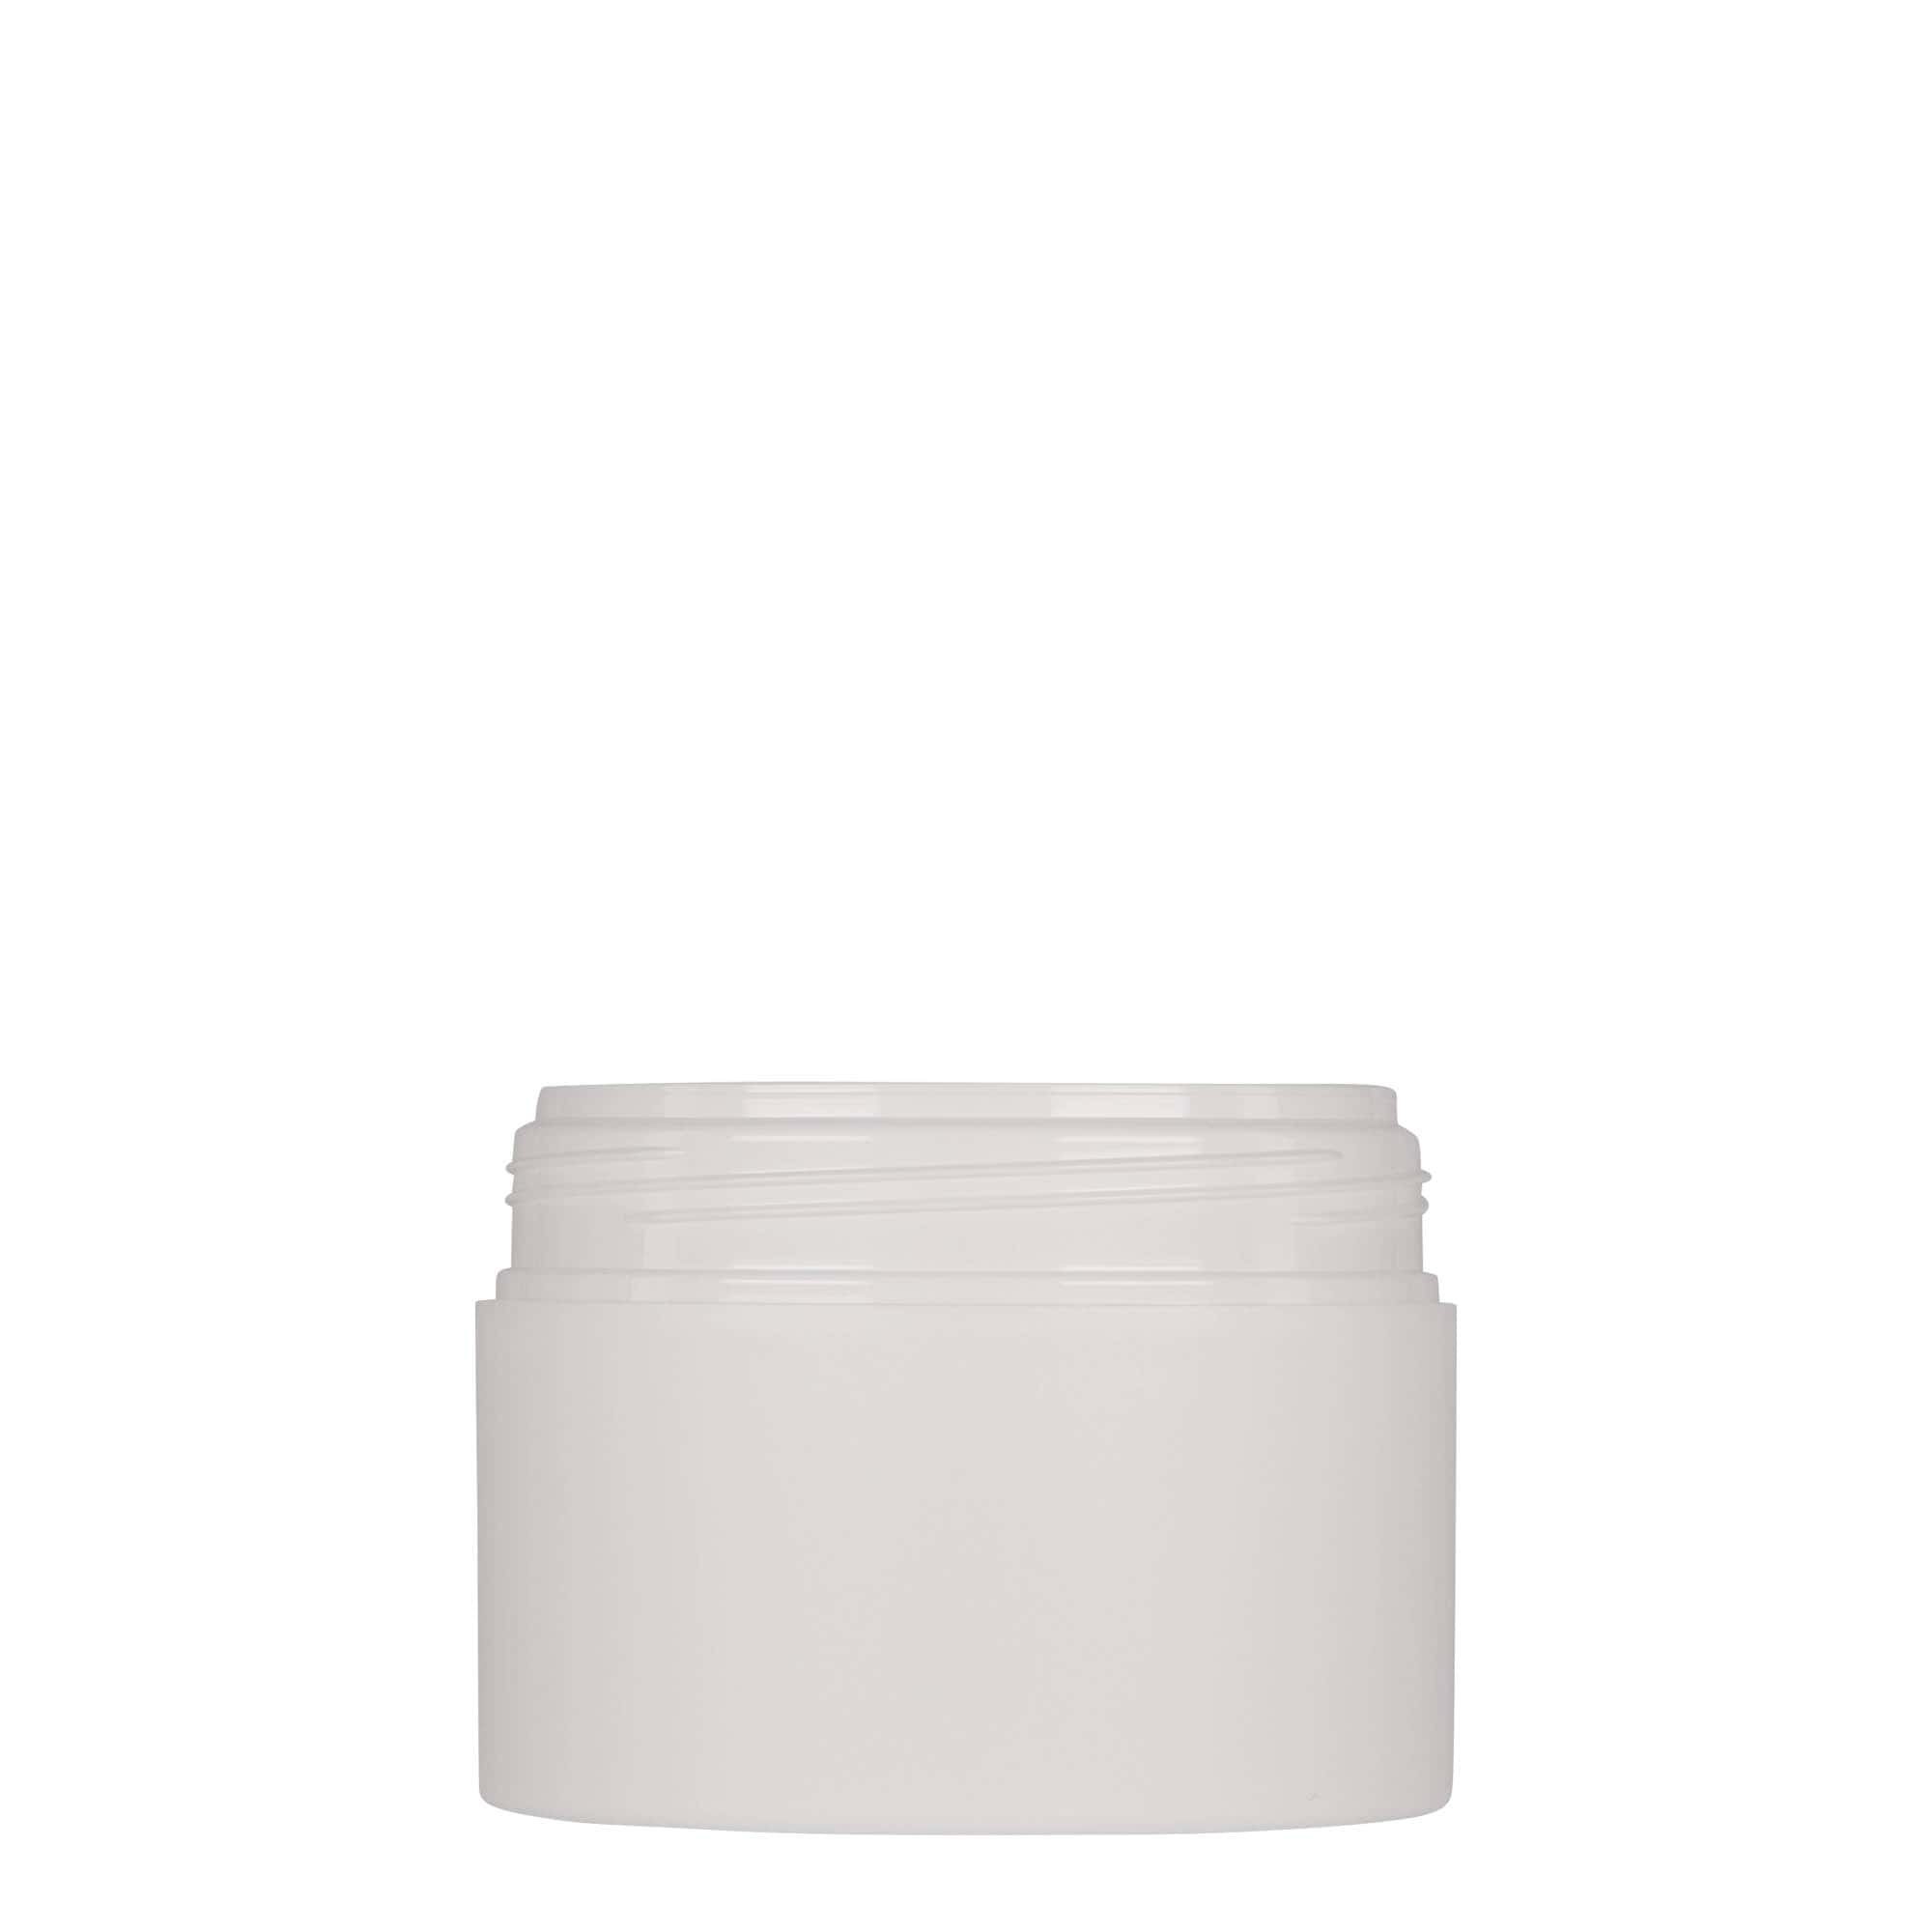 150 ml plastic jar 'Antonella', PP, white, closure: screw cap